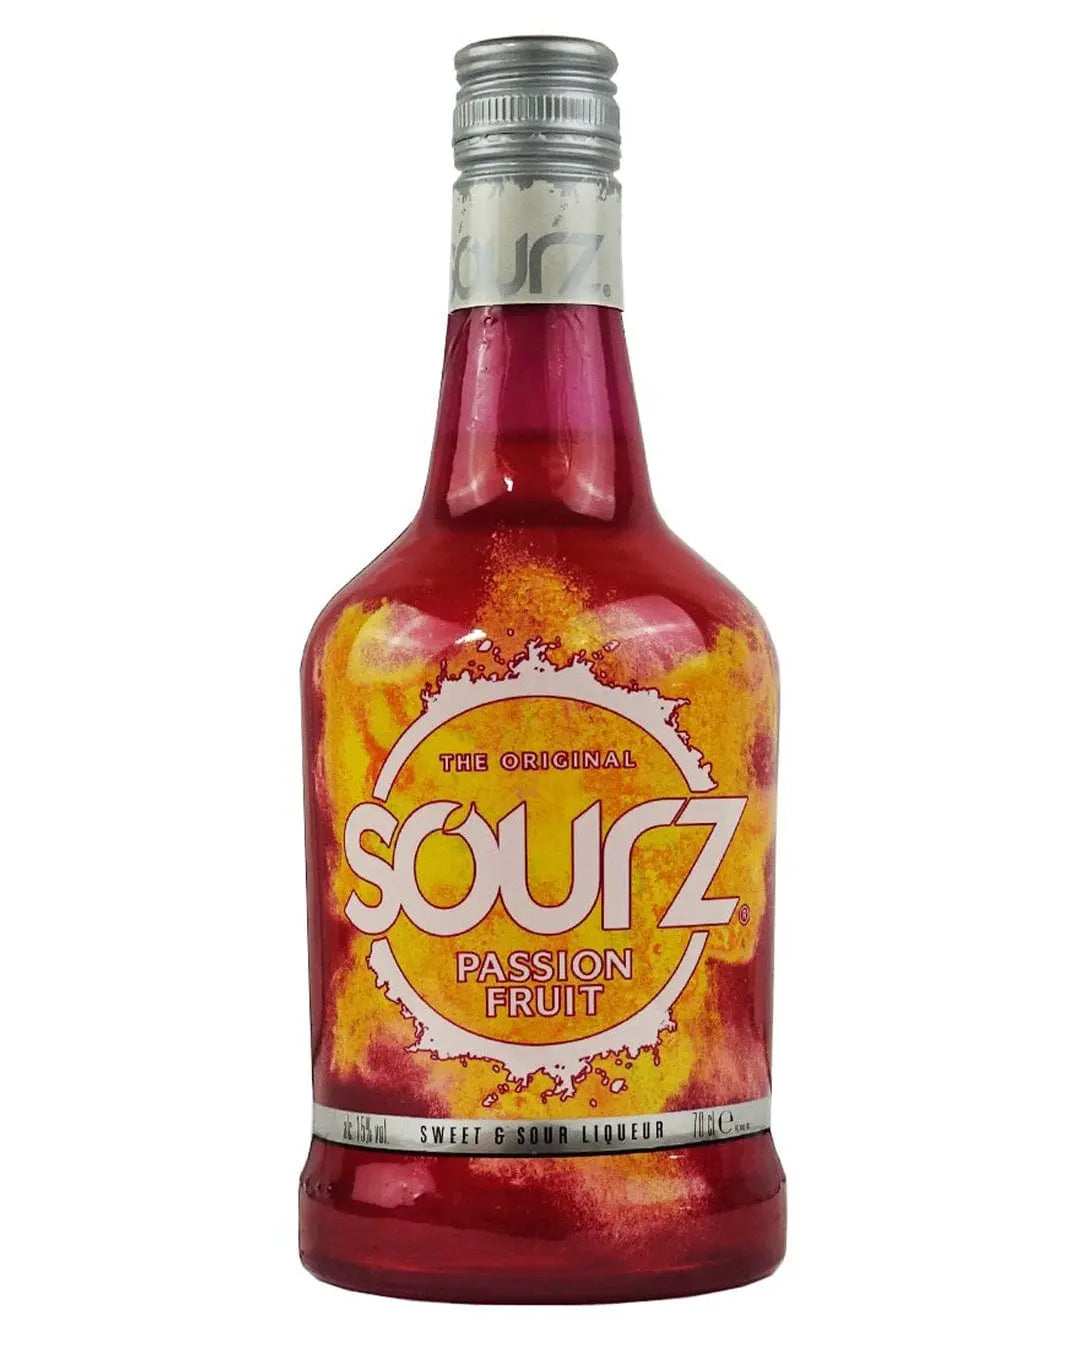 Sourz Passion Fruit Liqueur, 70 cl Liqueurs & Other Spirits 5010696004171